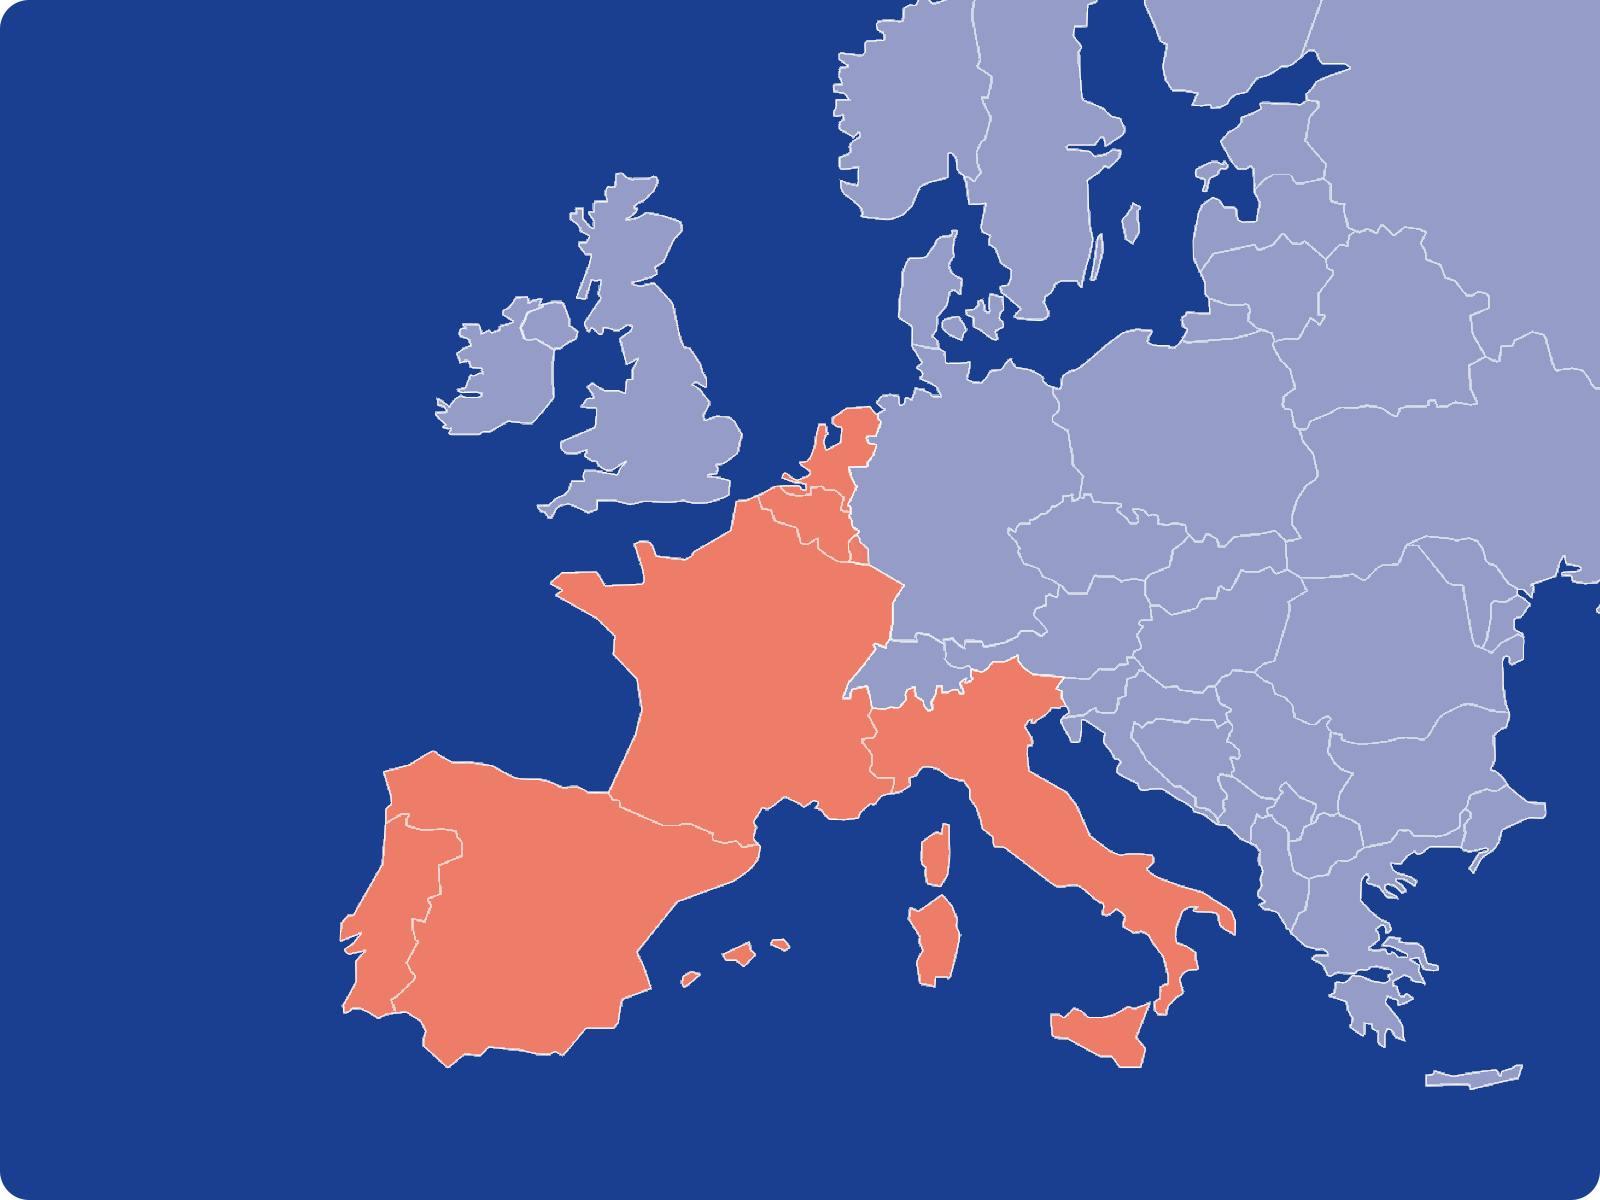 Carte de l'Europe avec la présence de Shopopop indiquée en couleur orange